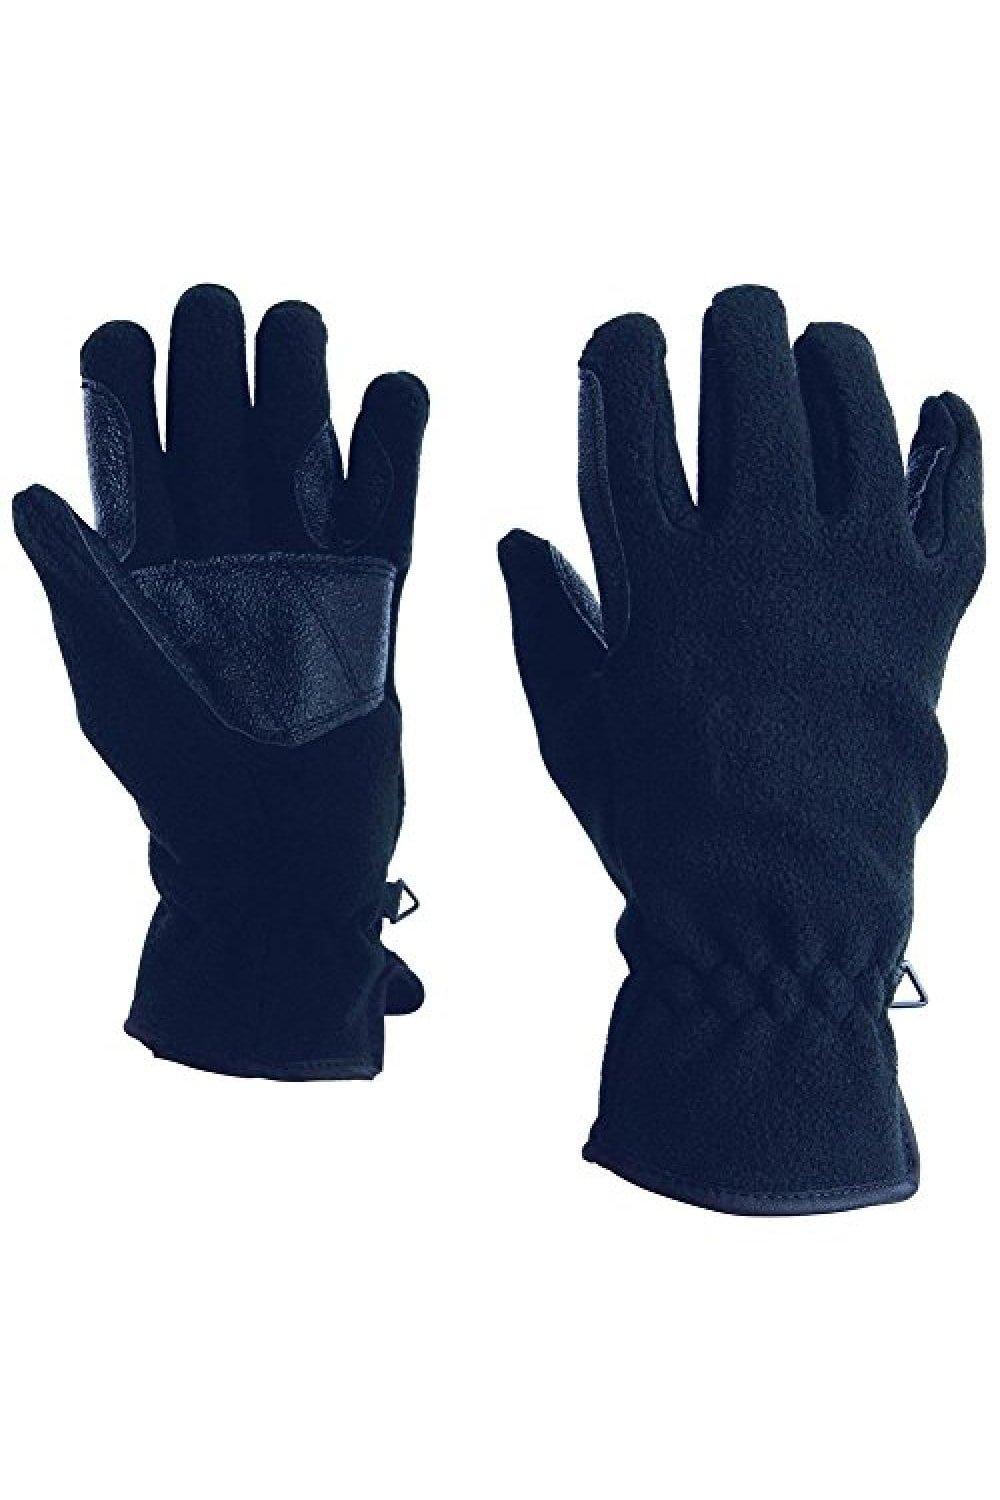 Флисовые перчатки для верховой езды Polar Dublin, темно-синий перчатки atmosphere fresh биколор размер m усиленные пальцы пвх